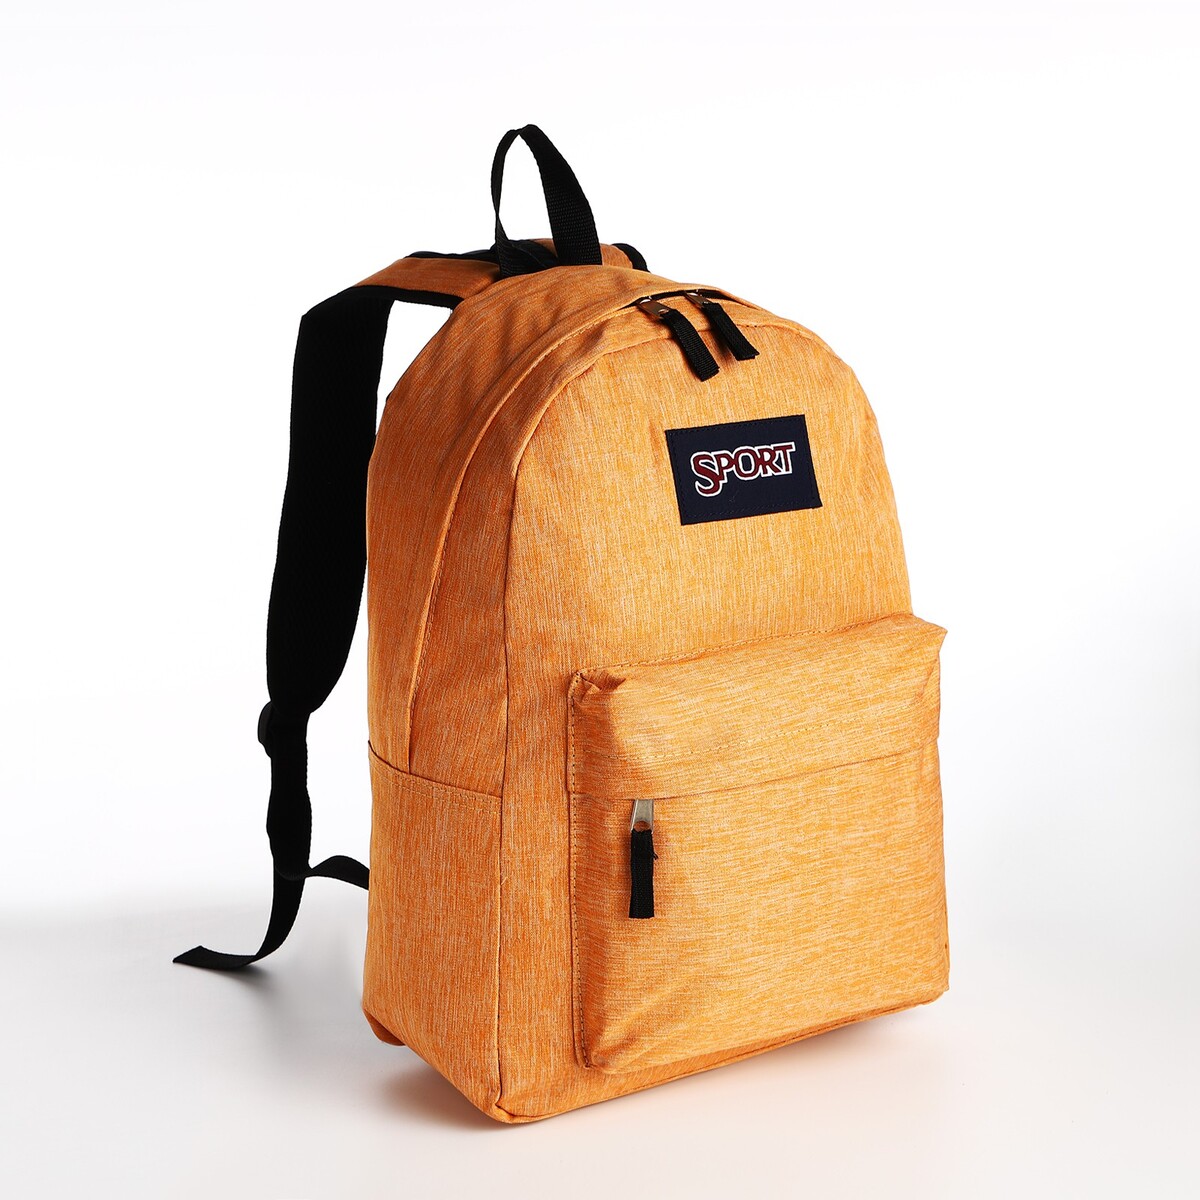 Рюкзак молодежный из текстиля на молнии, наружный карман, цвет оранжевый рюкзак молодежный grizzly анатомический оранжевый rb 456 4 1